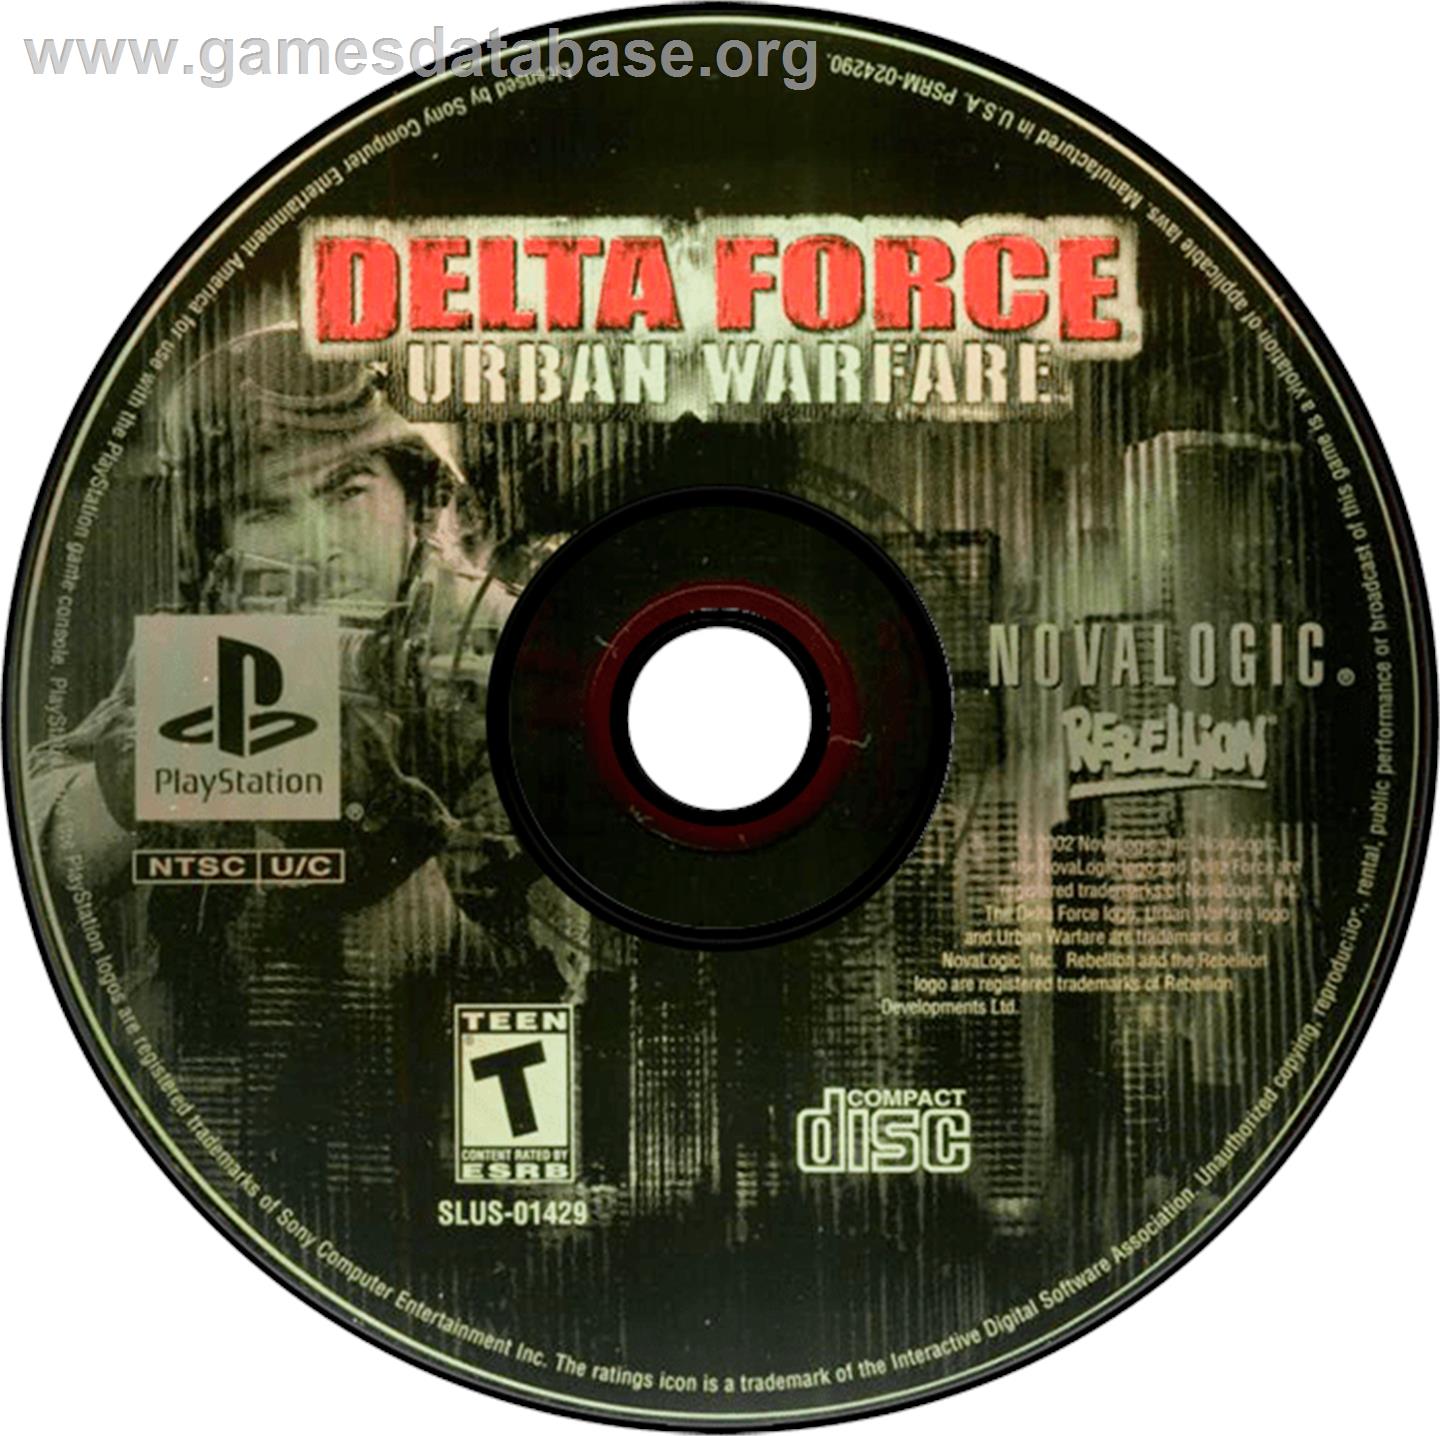 Delta Force: Urban Warfare - Sony Playstation - Artwork - Disc